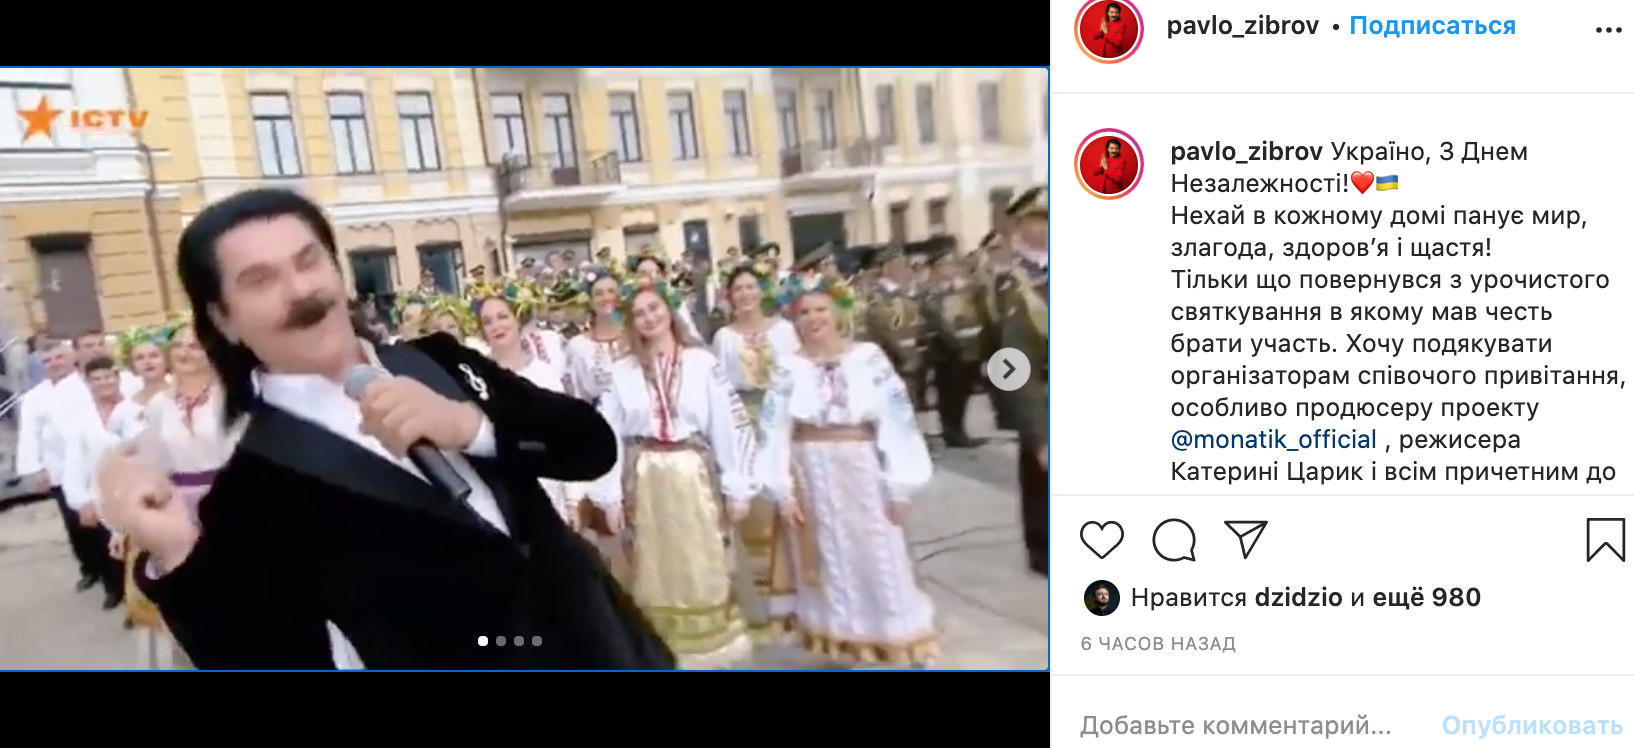 Зибров выступил на Дне Независимости